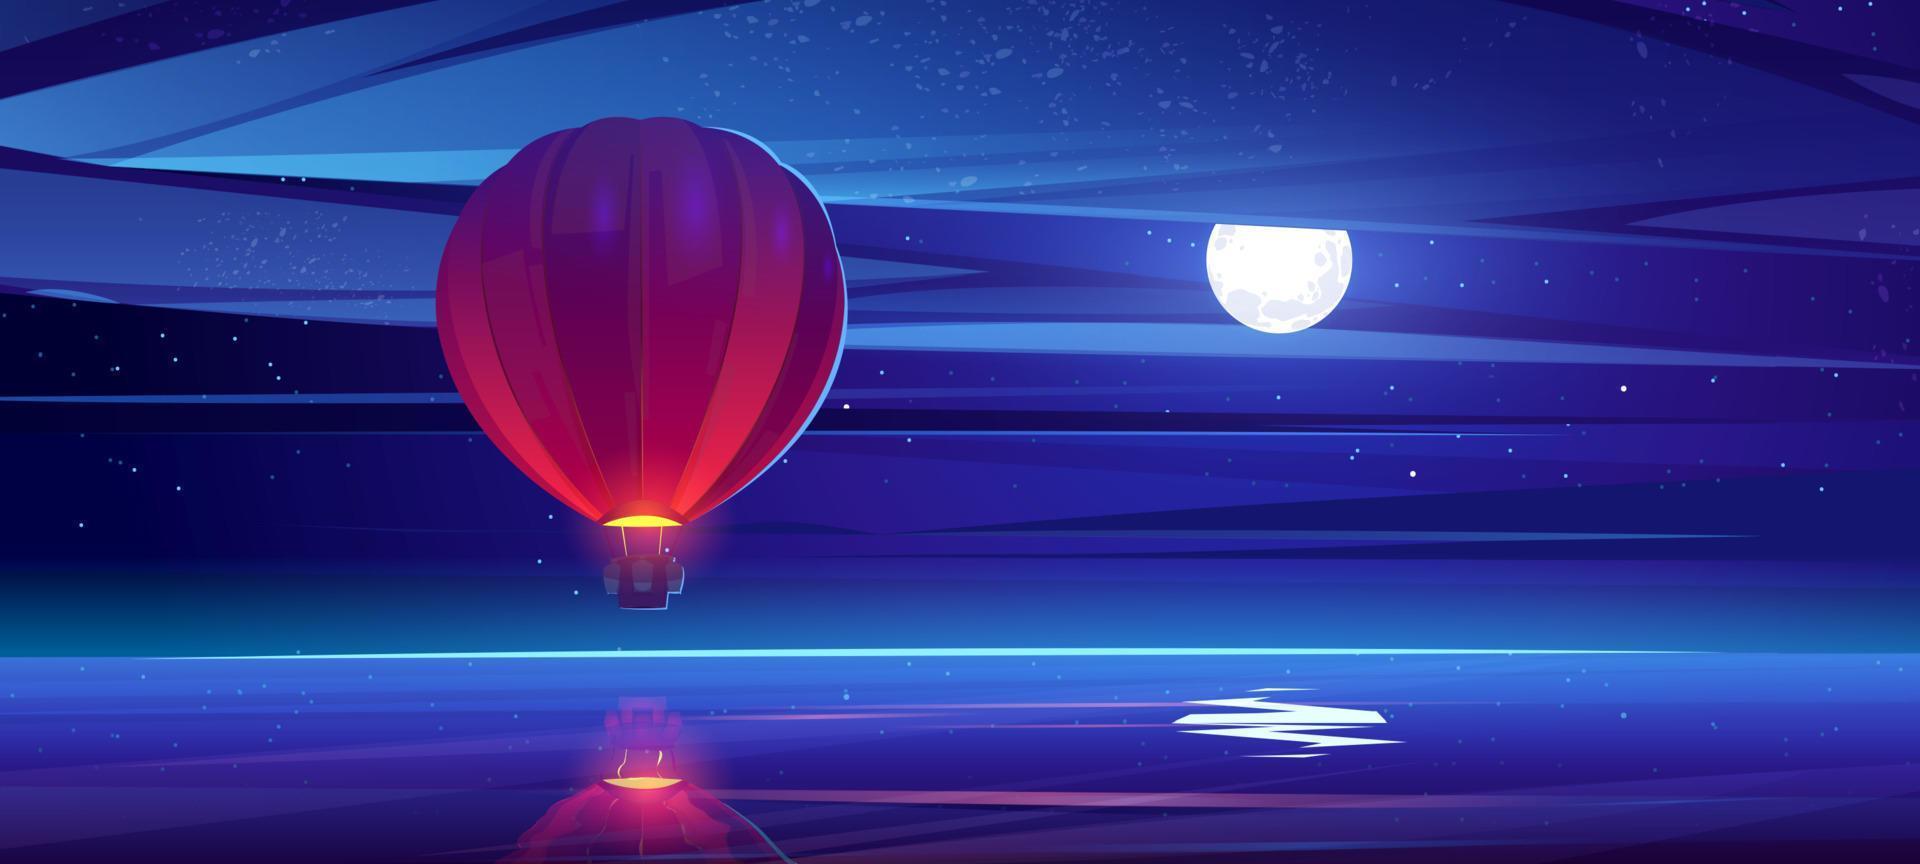 globo aerostático volando sobre el agua del mar en el cielo nocturno vector